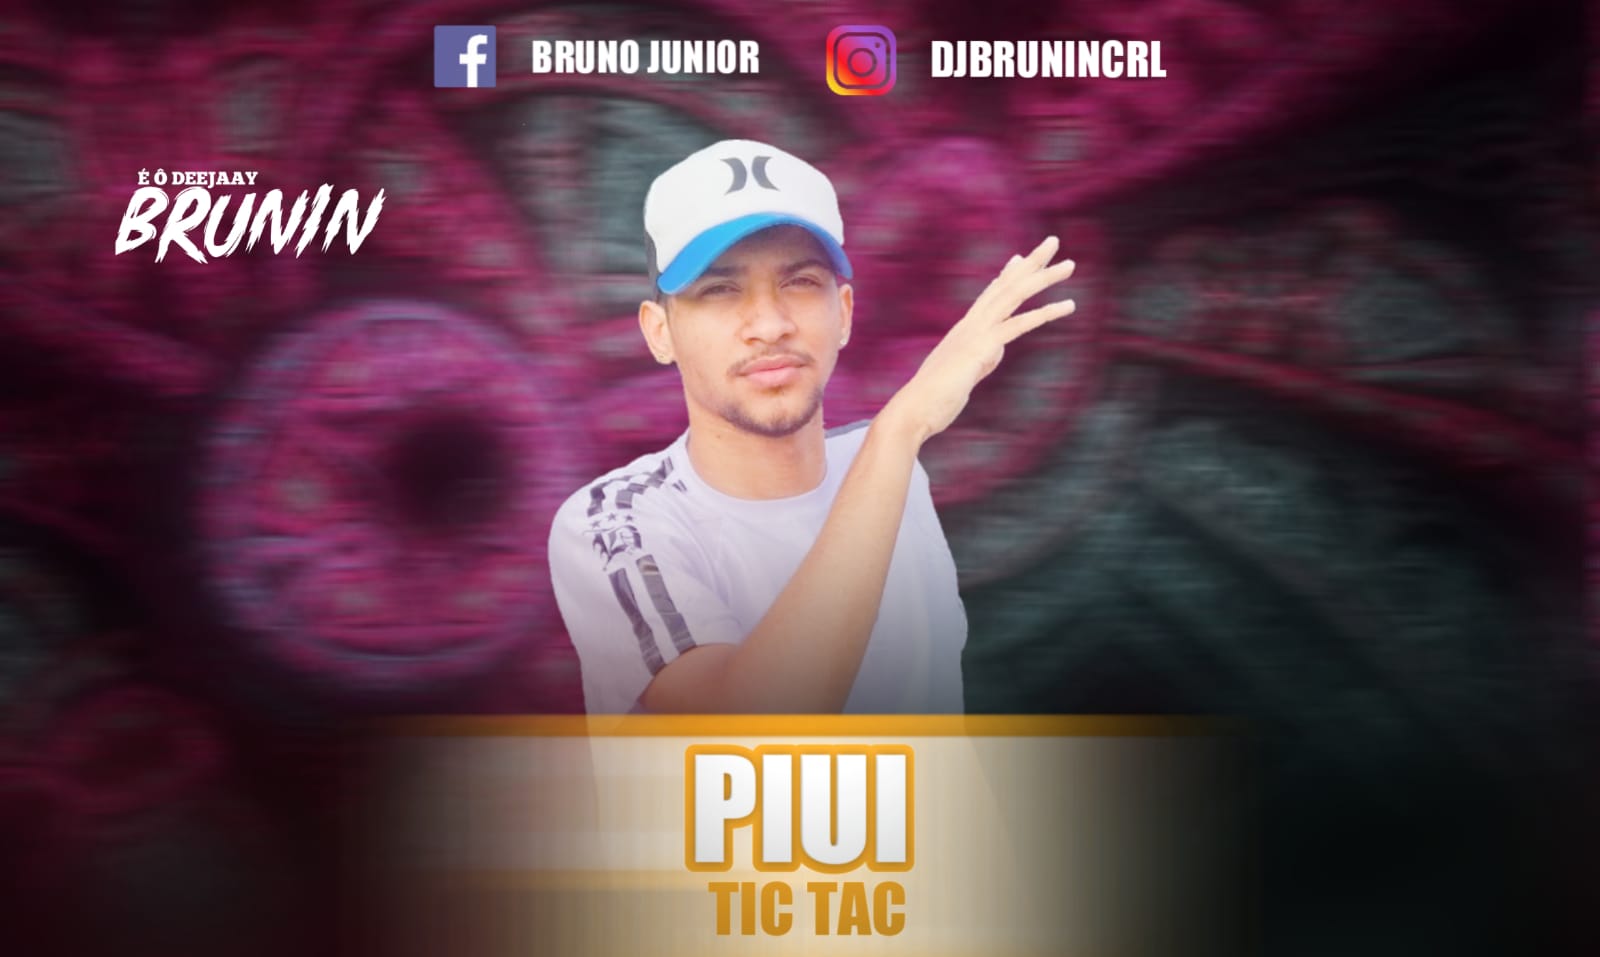 Piui Tic Tac — MC RD